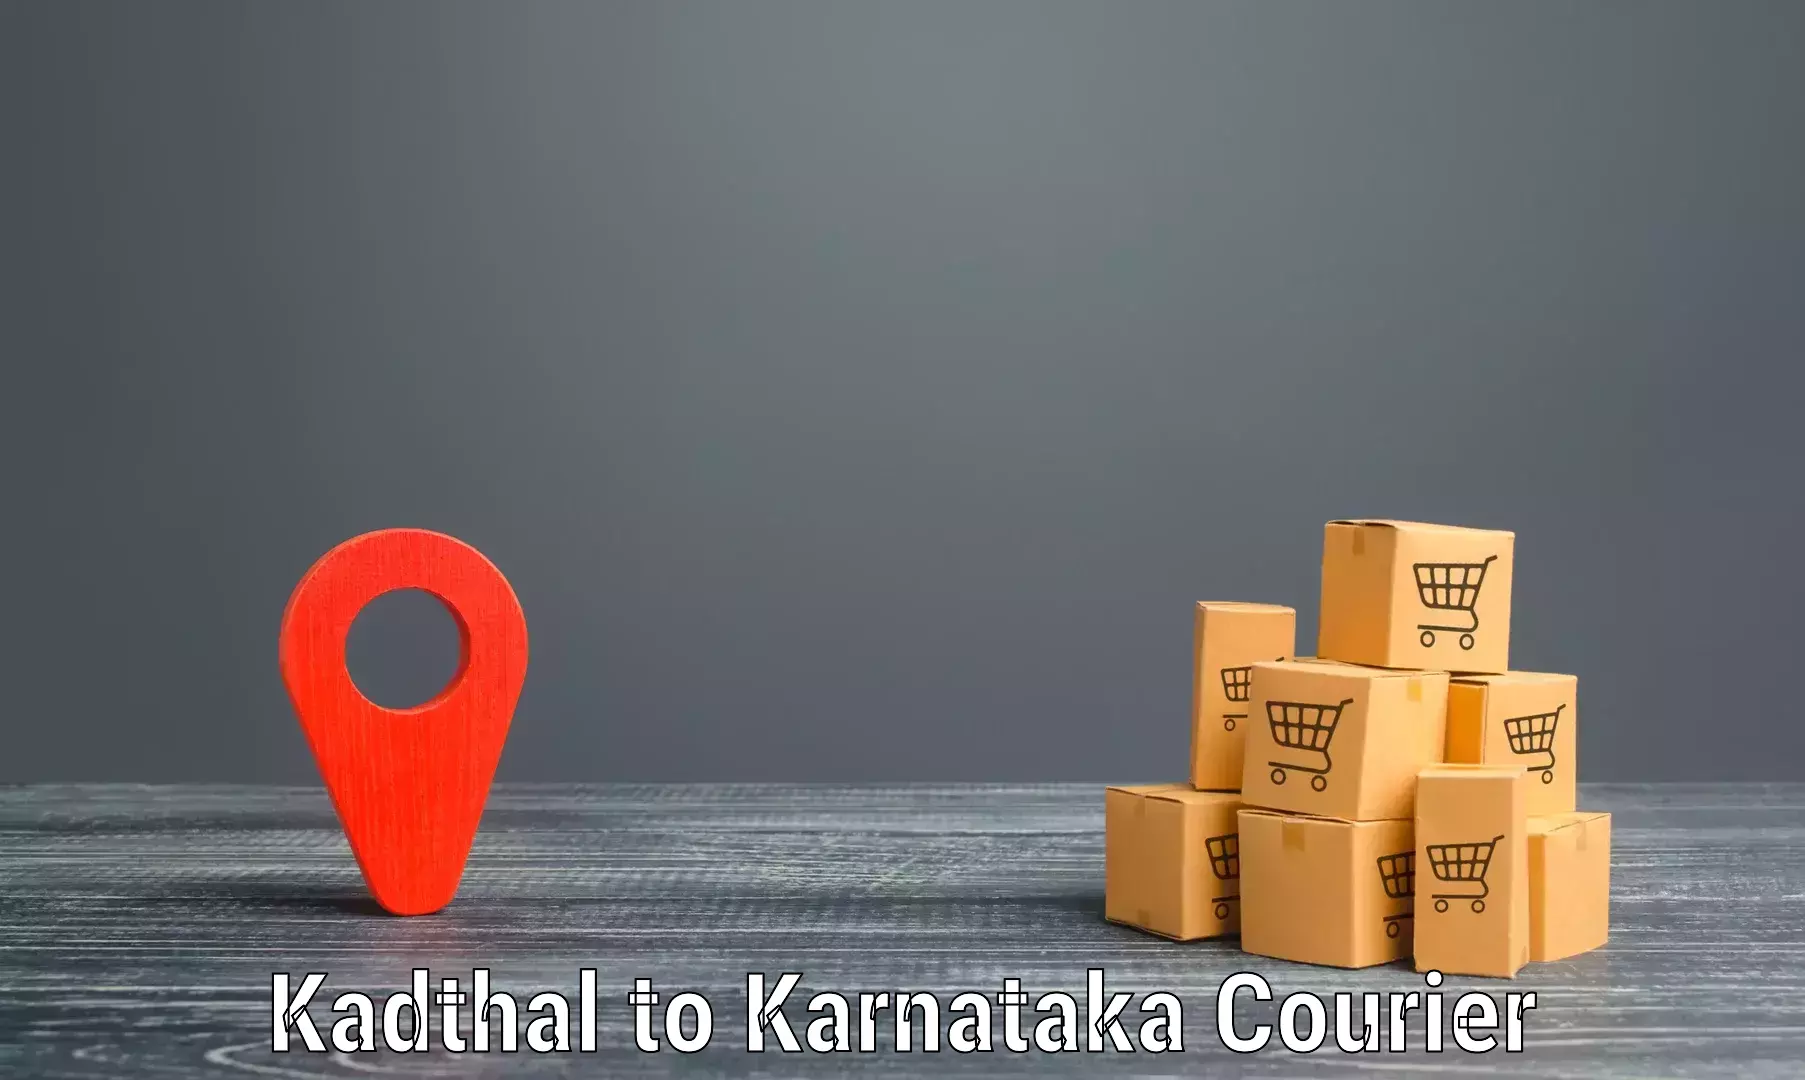 Seamless shipping experience Kadthal to Karkala